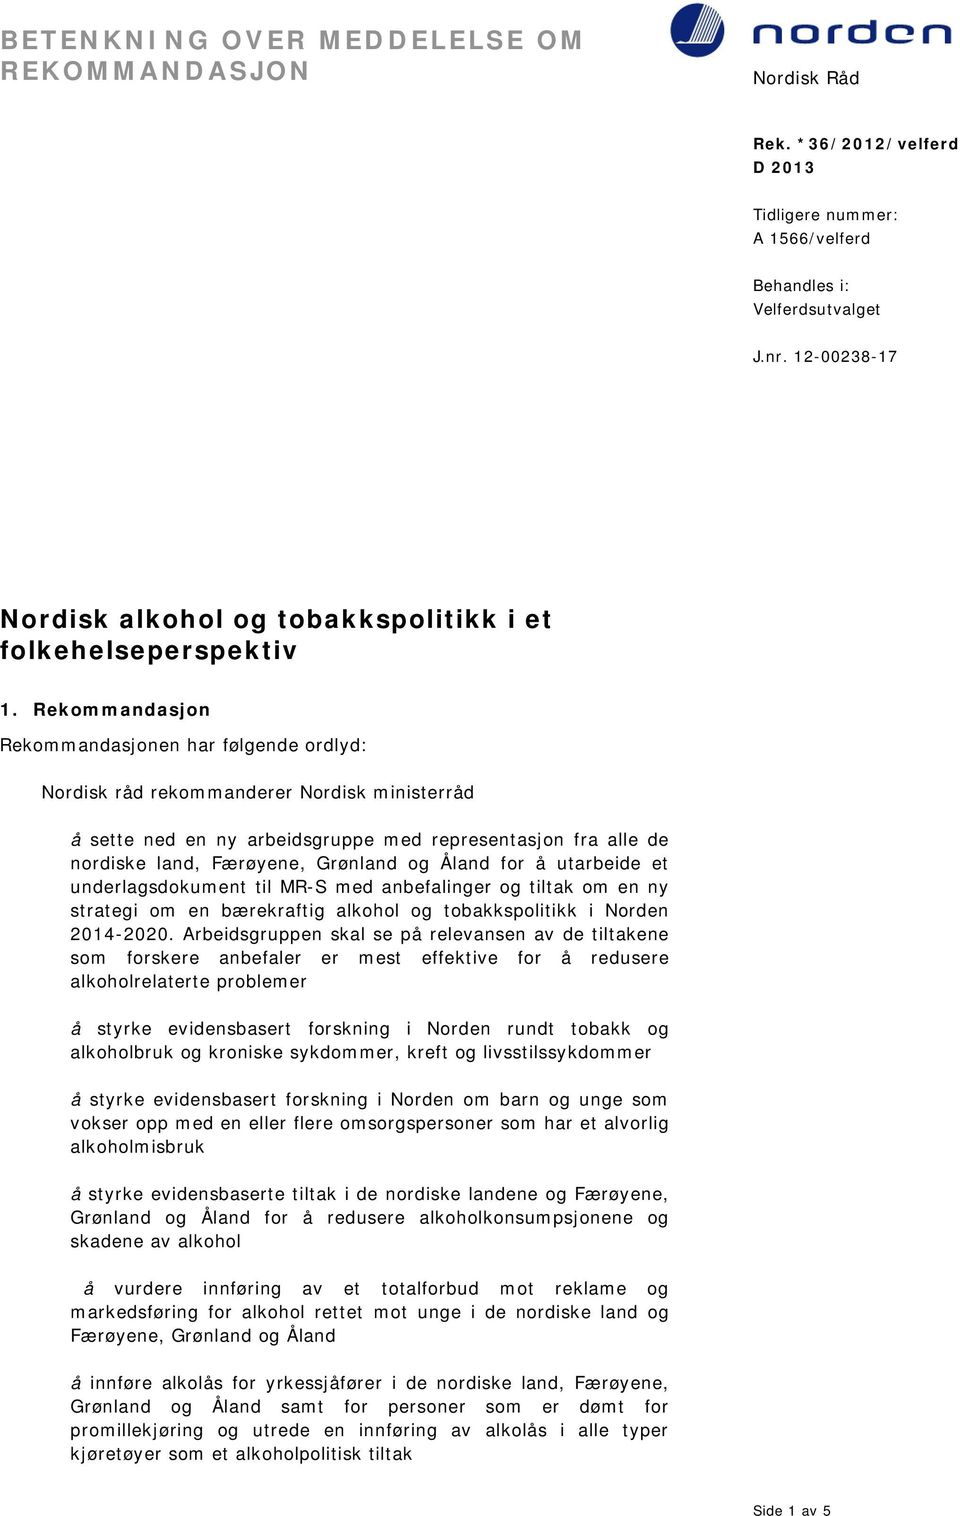 Åland for å utarbeide et underlagsdokument til MR-S med anbefalinger og tiltak om en ny strategi om en bærekraftig alkohol og tobakkspolitikk i Norden 2014-2020.